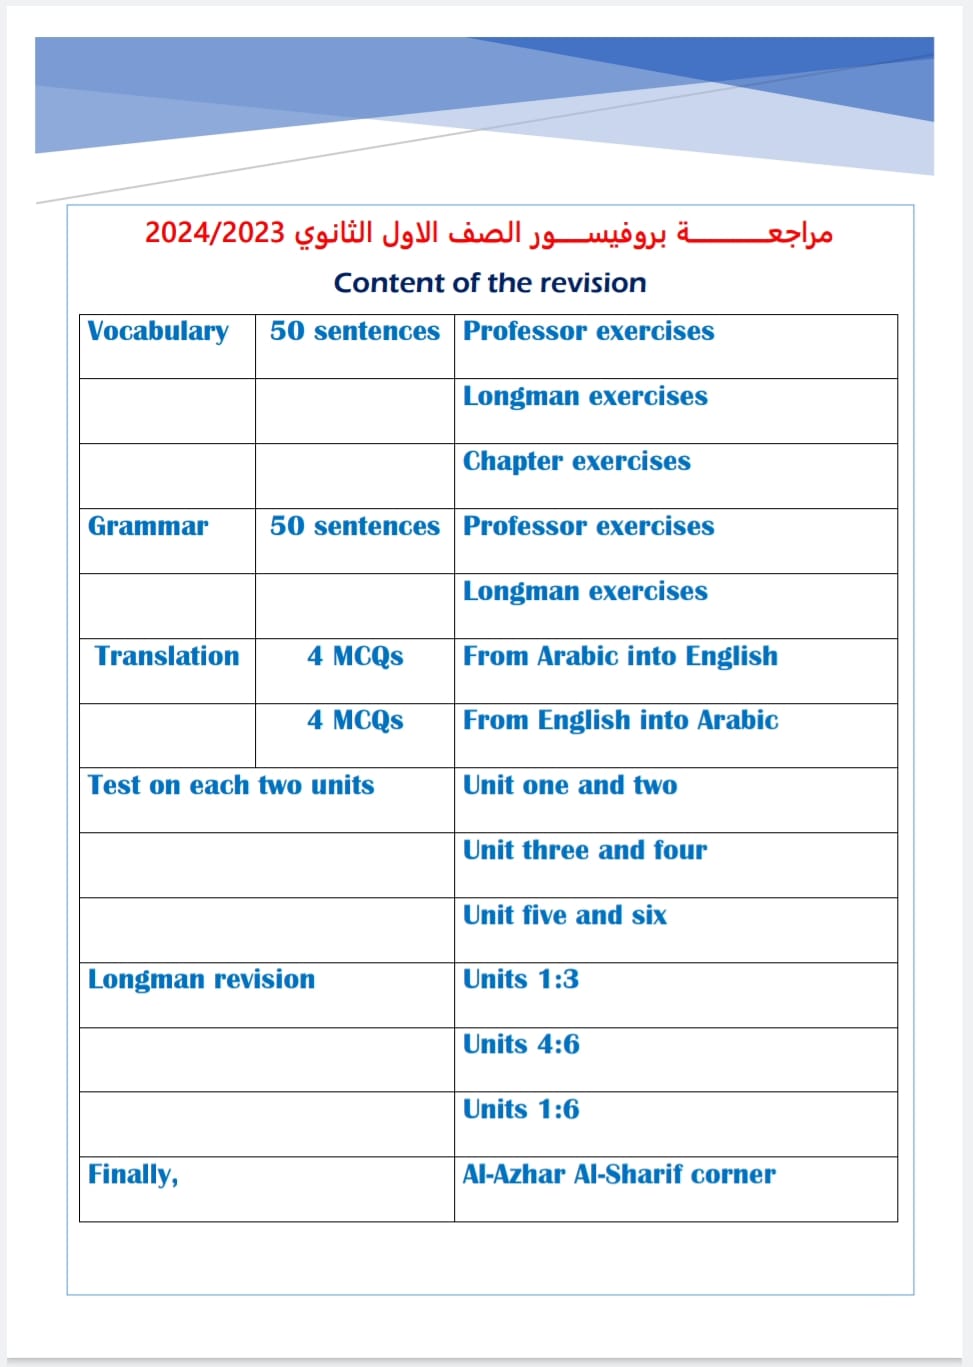 مراجعة البروفيسور لغة انجليزية أولى ثانوي ترم أول. pdf 40597110